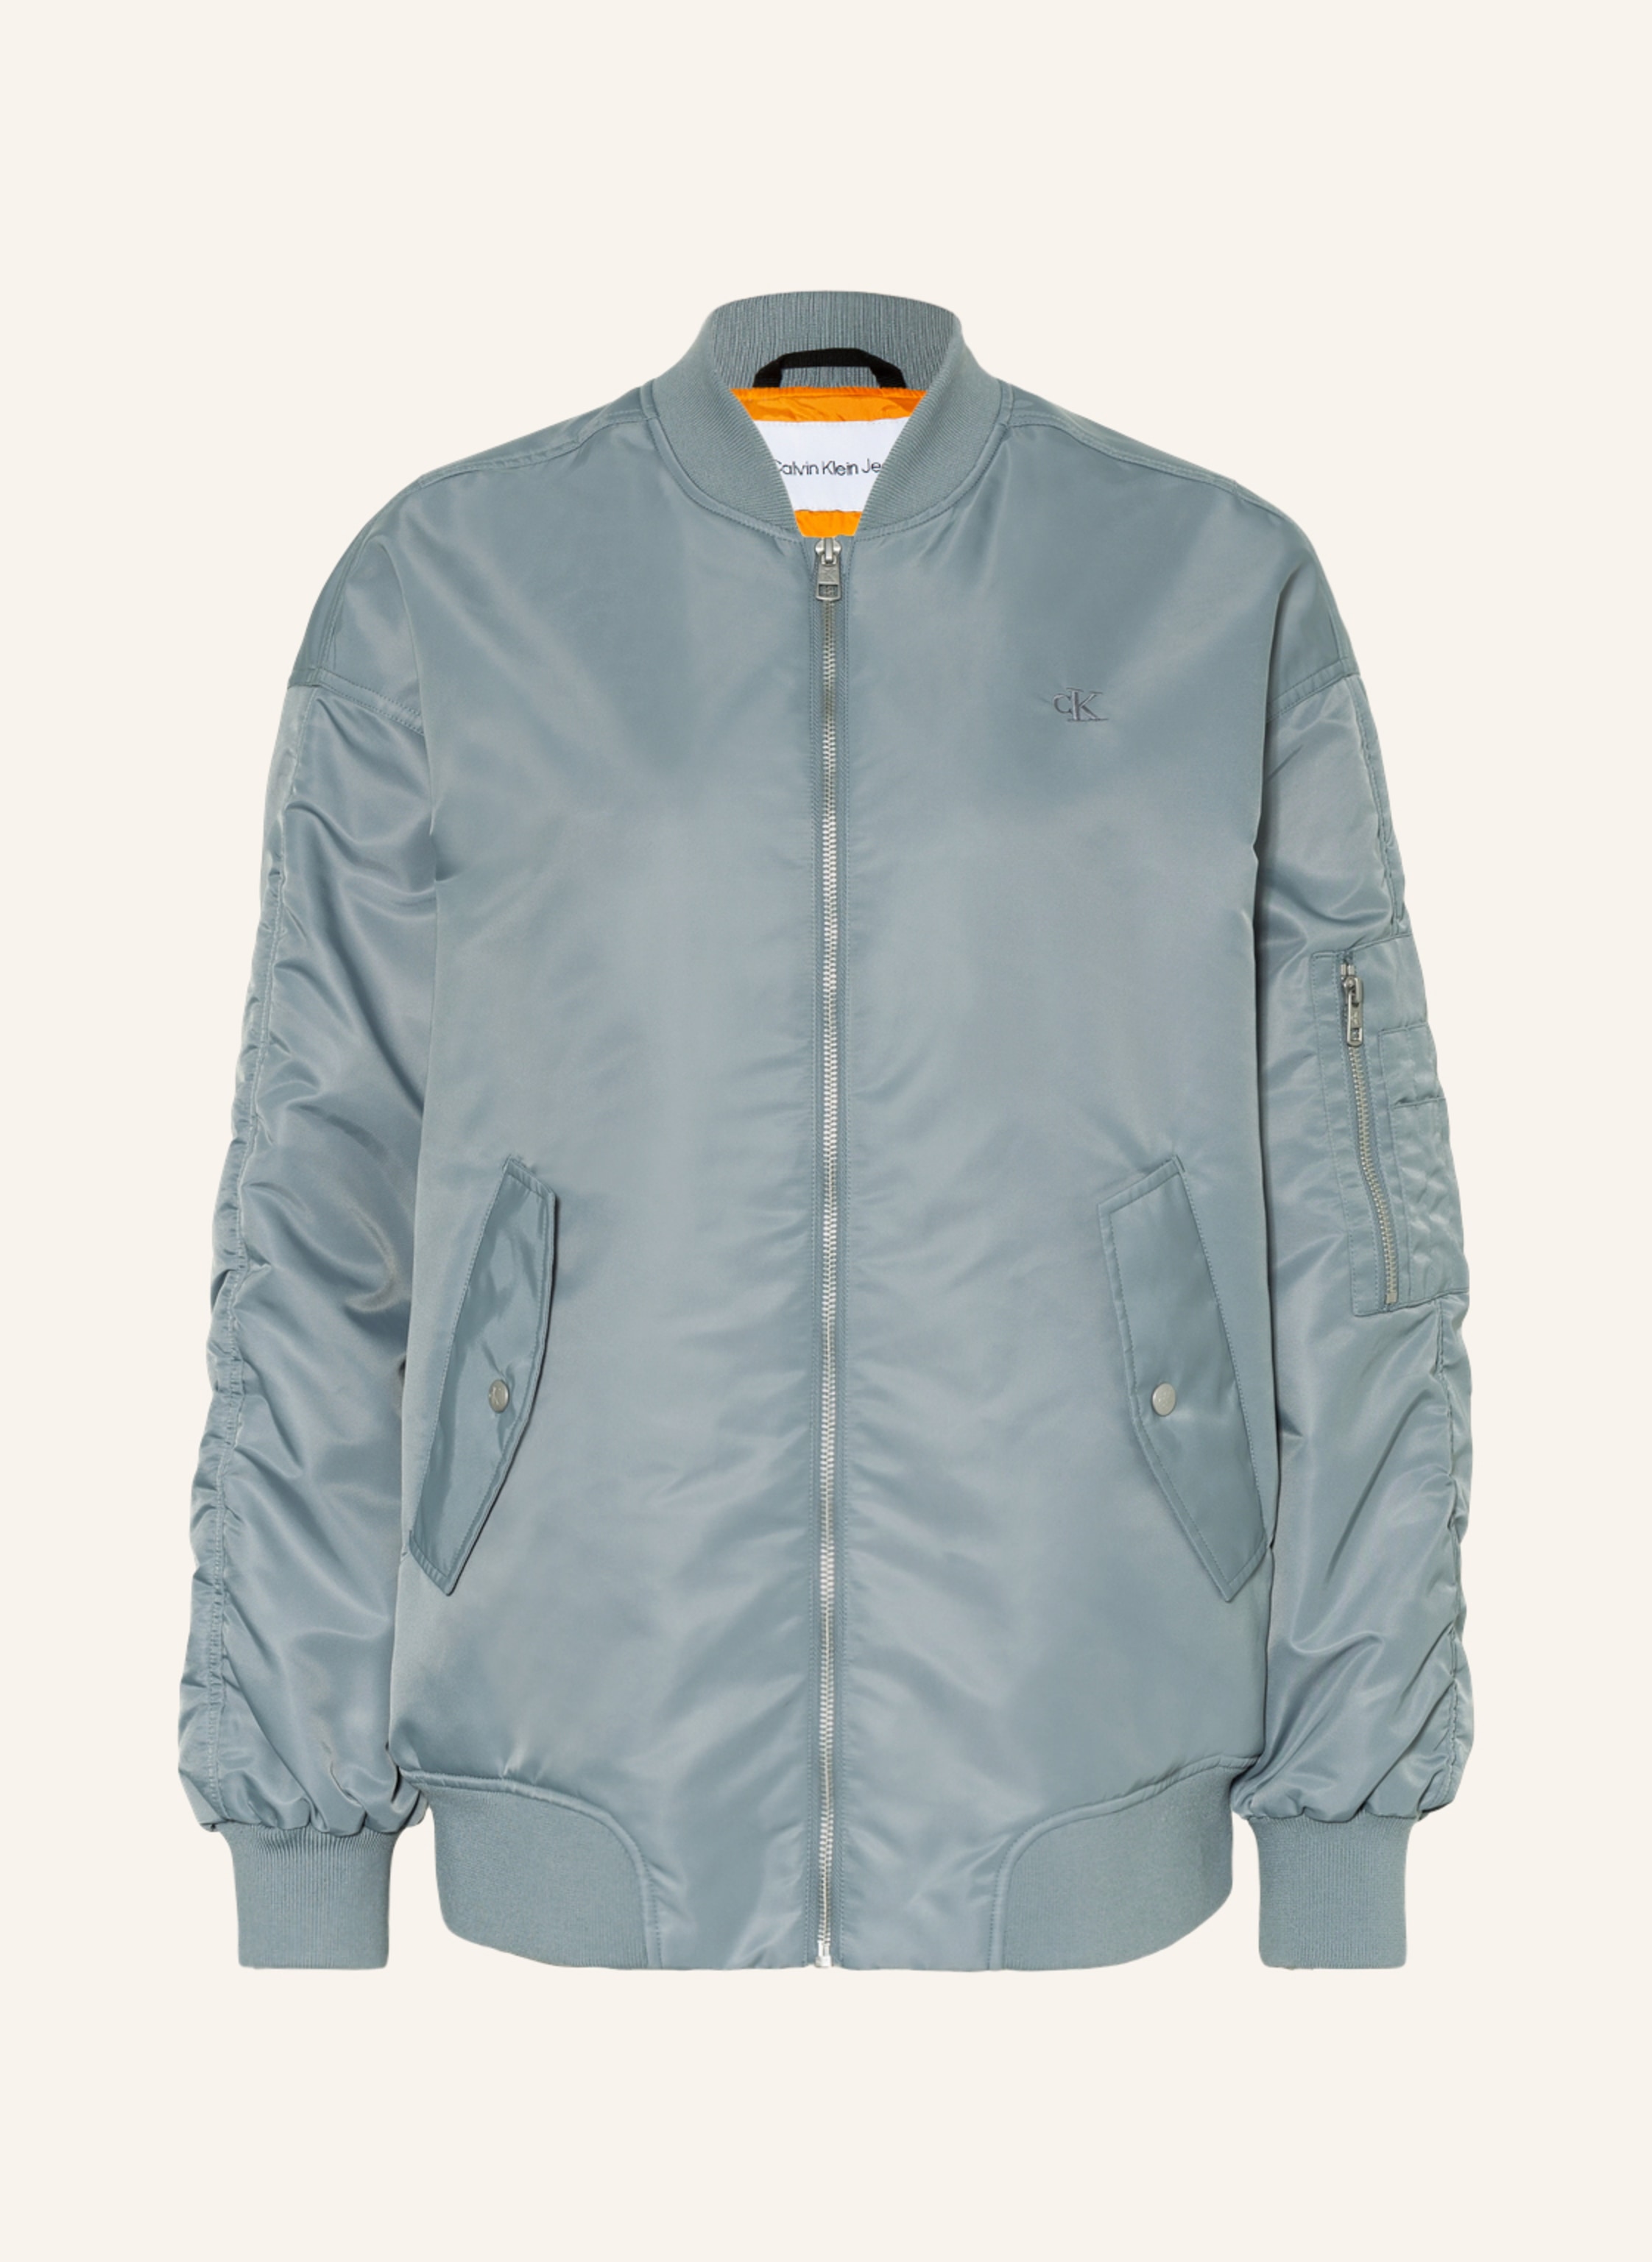 Calvin Klein Jeans Bomber jacket in blue gray | Breuninger